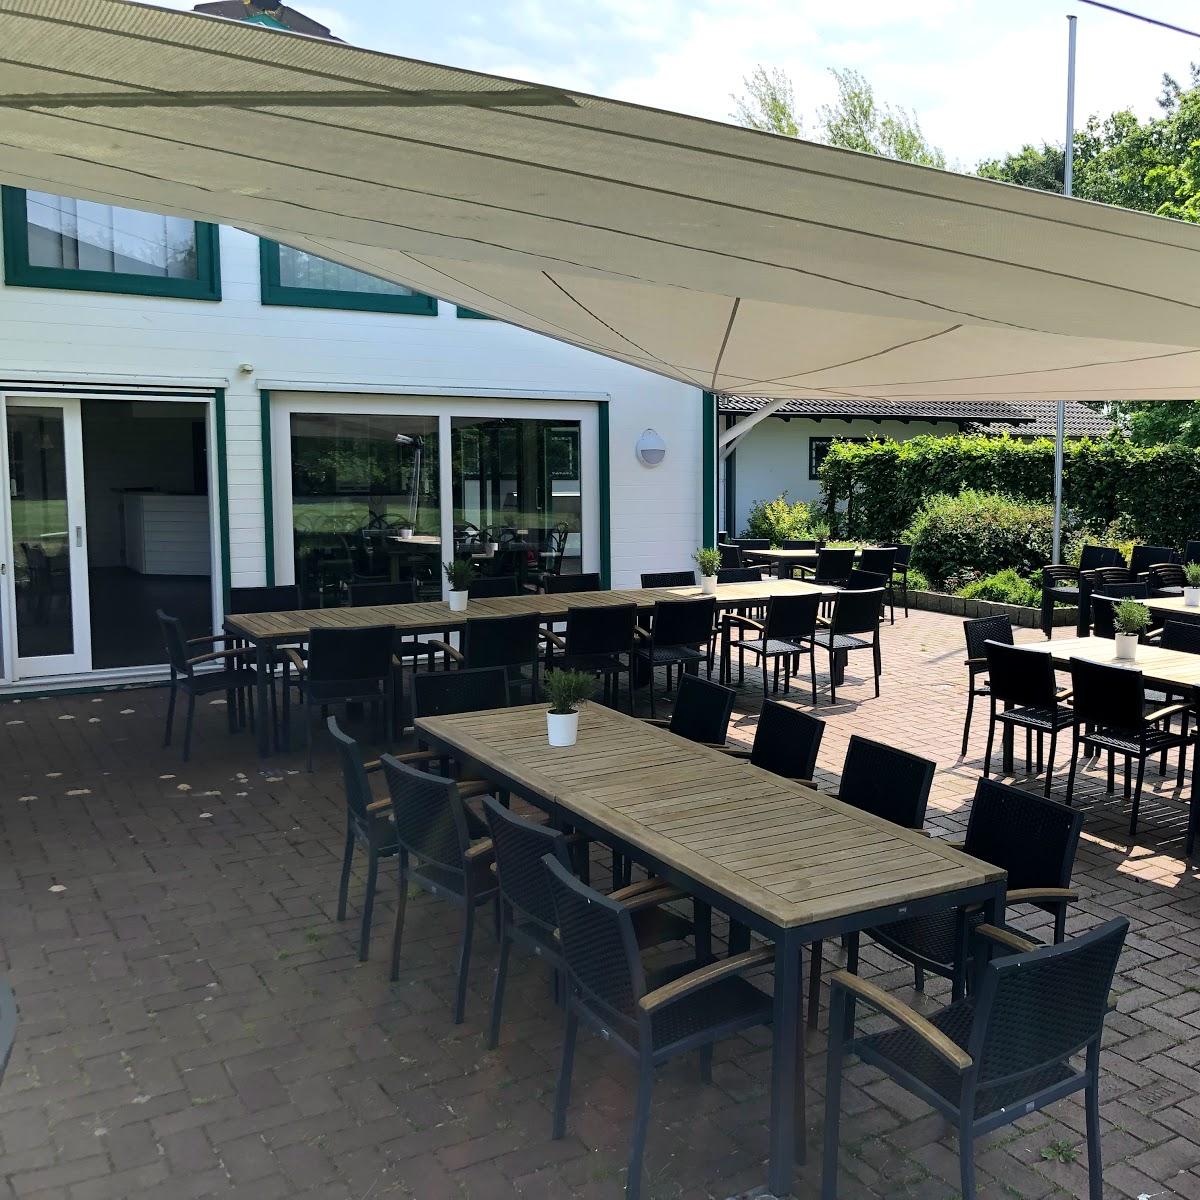 Restaurant "Klibisch am Park" in  Bremerhaven